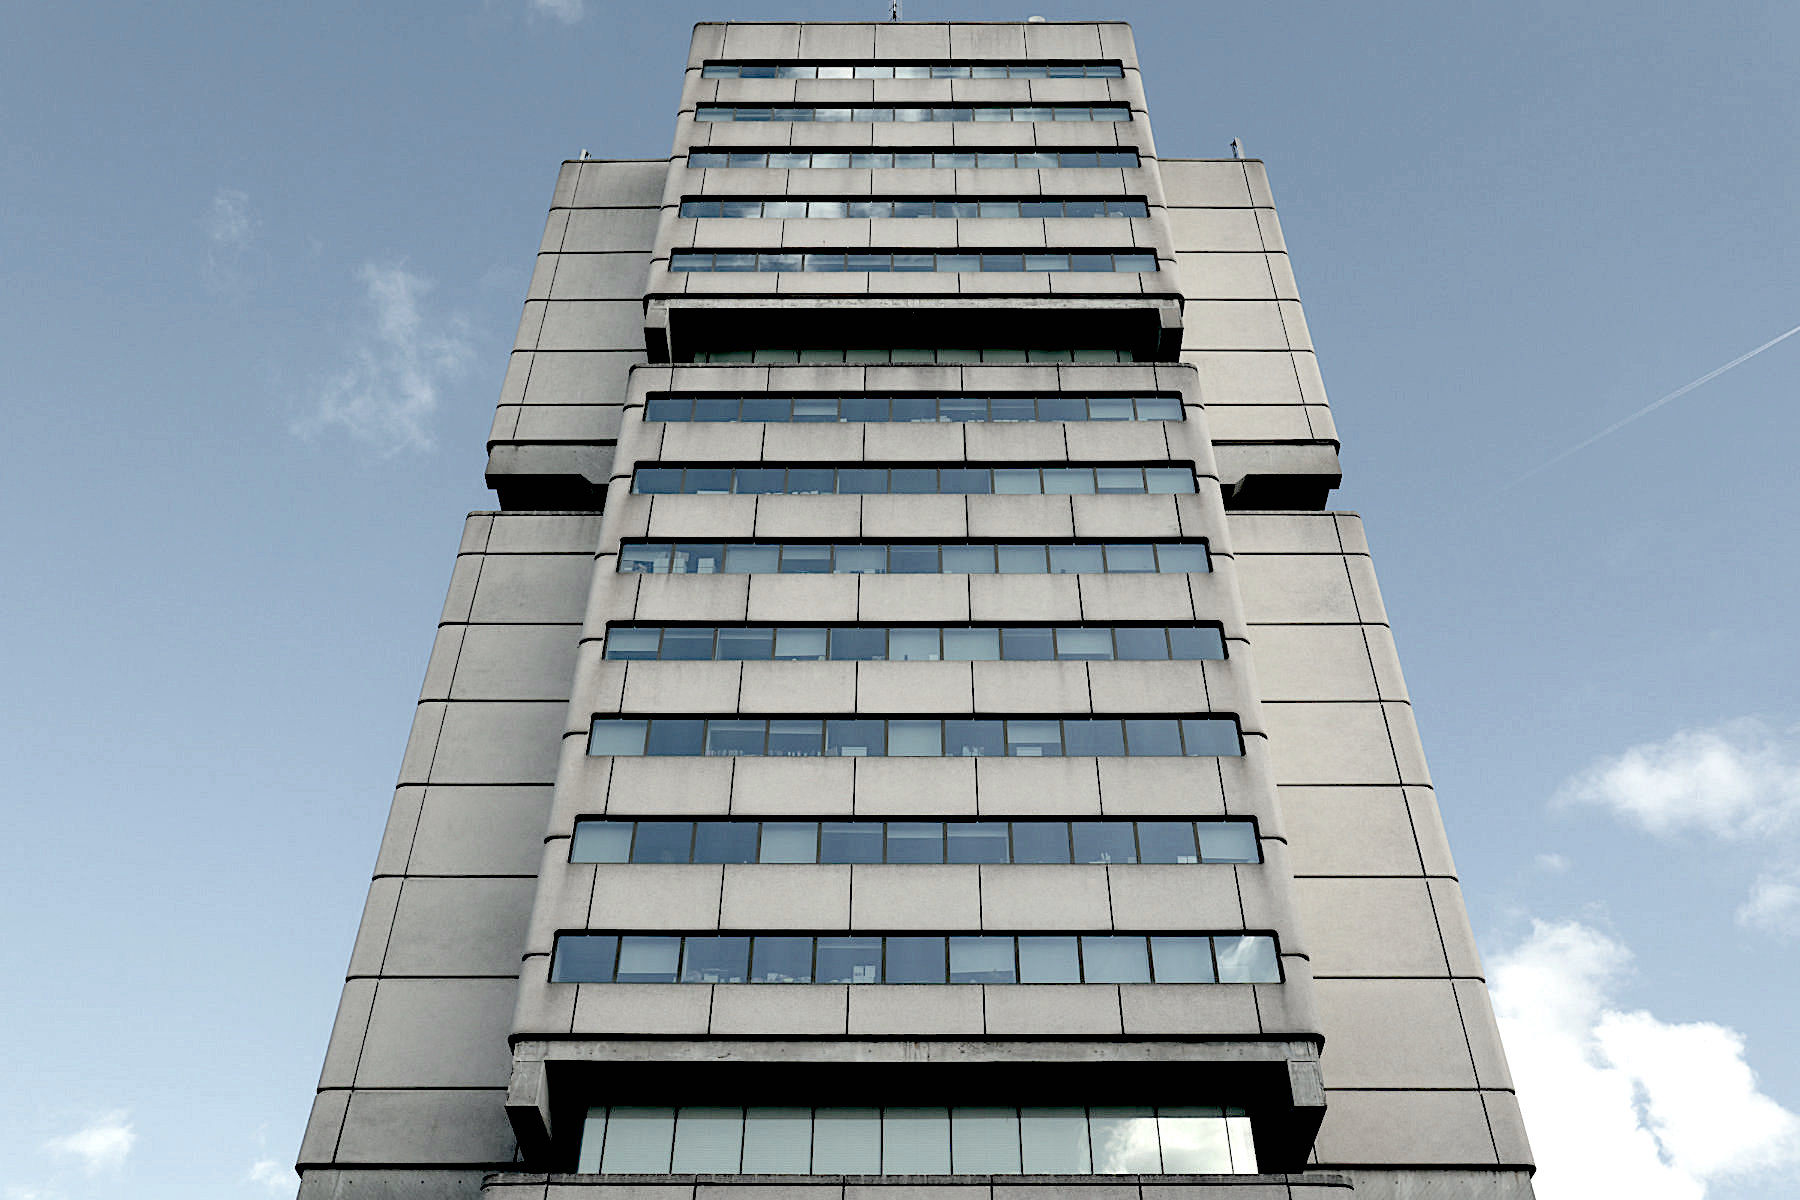 Entwurf: Jean Willerval mit André Lagarde und Branko Vulic, 1979. Das CUB ist das höchste Gebäude des Stadtteils. Die Inneneinrichtung stammt von Pierre Guariche, einem damals berühmten Designer aus Paris. 